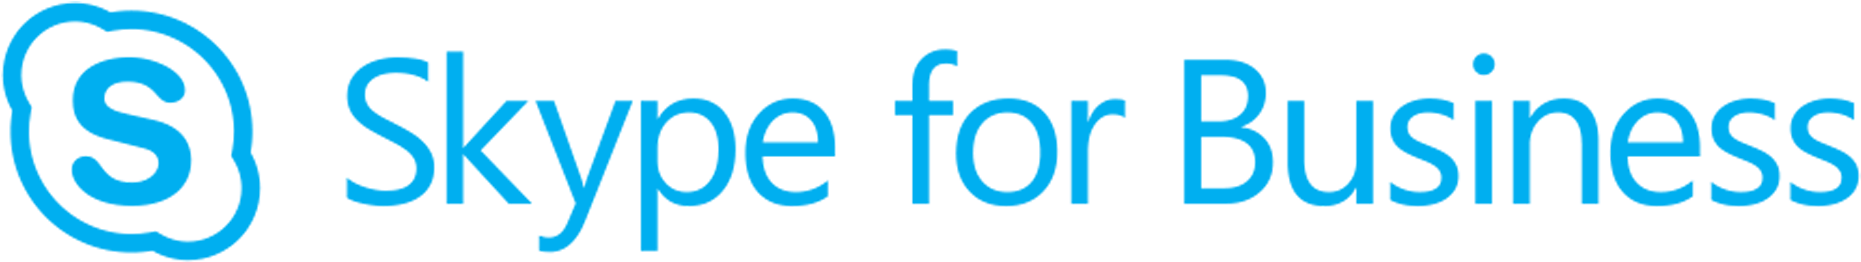 Skype Logo - Skype For Business ロゴ (2000x654)